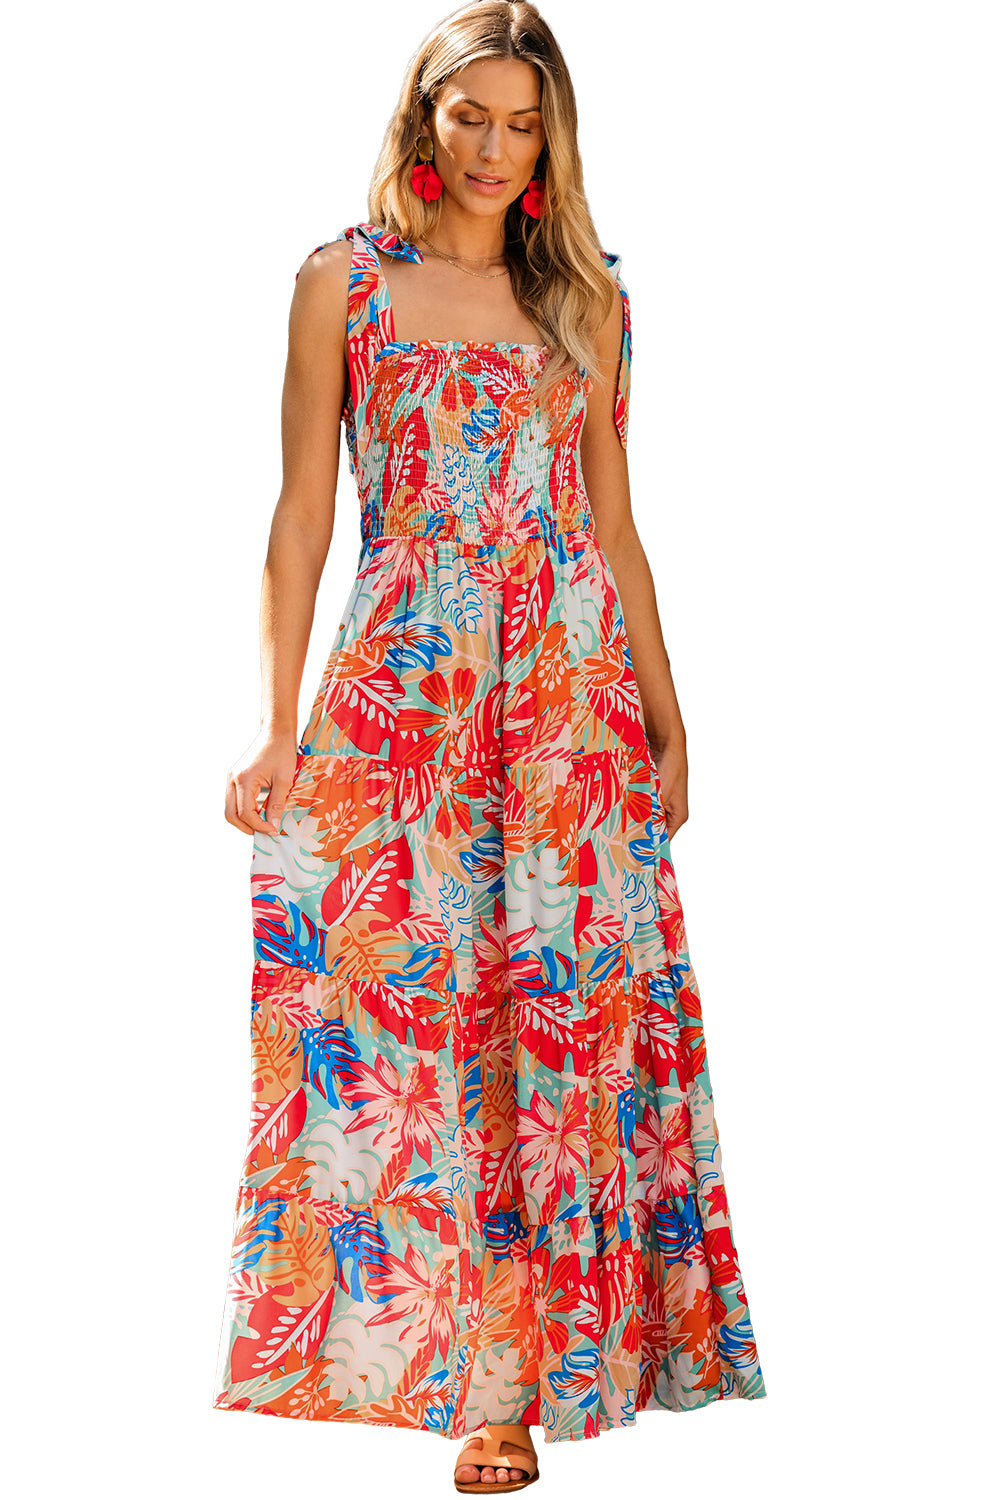 Raznobojna vibrantna haljina s tropskim printom i naborima na više razina